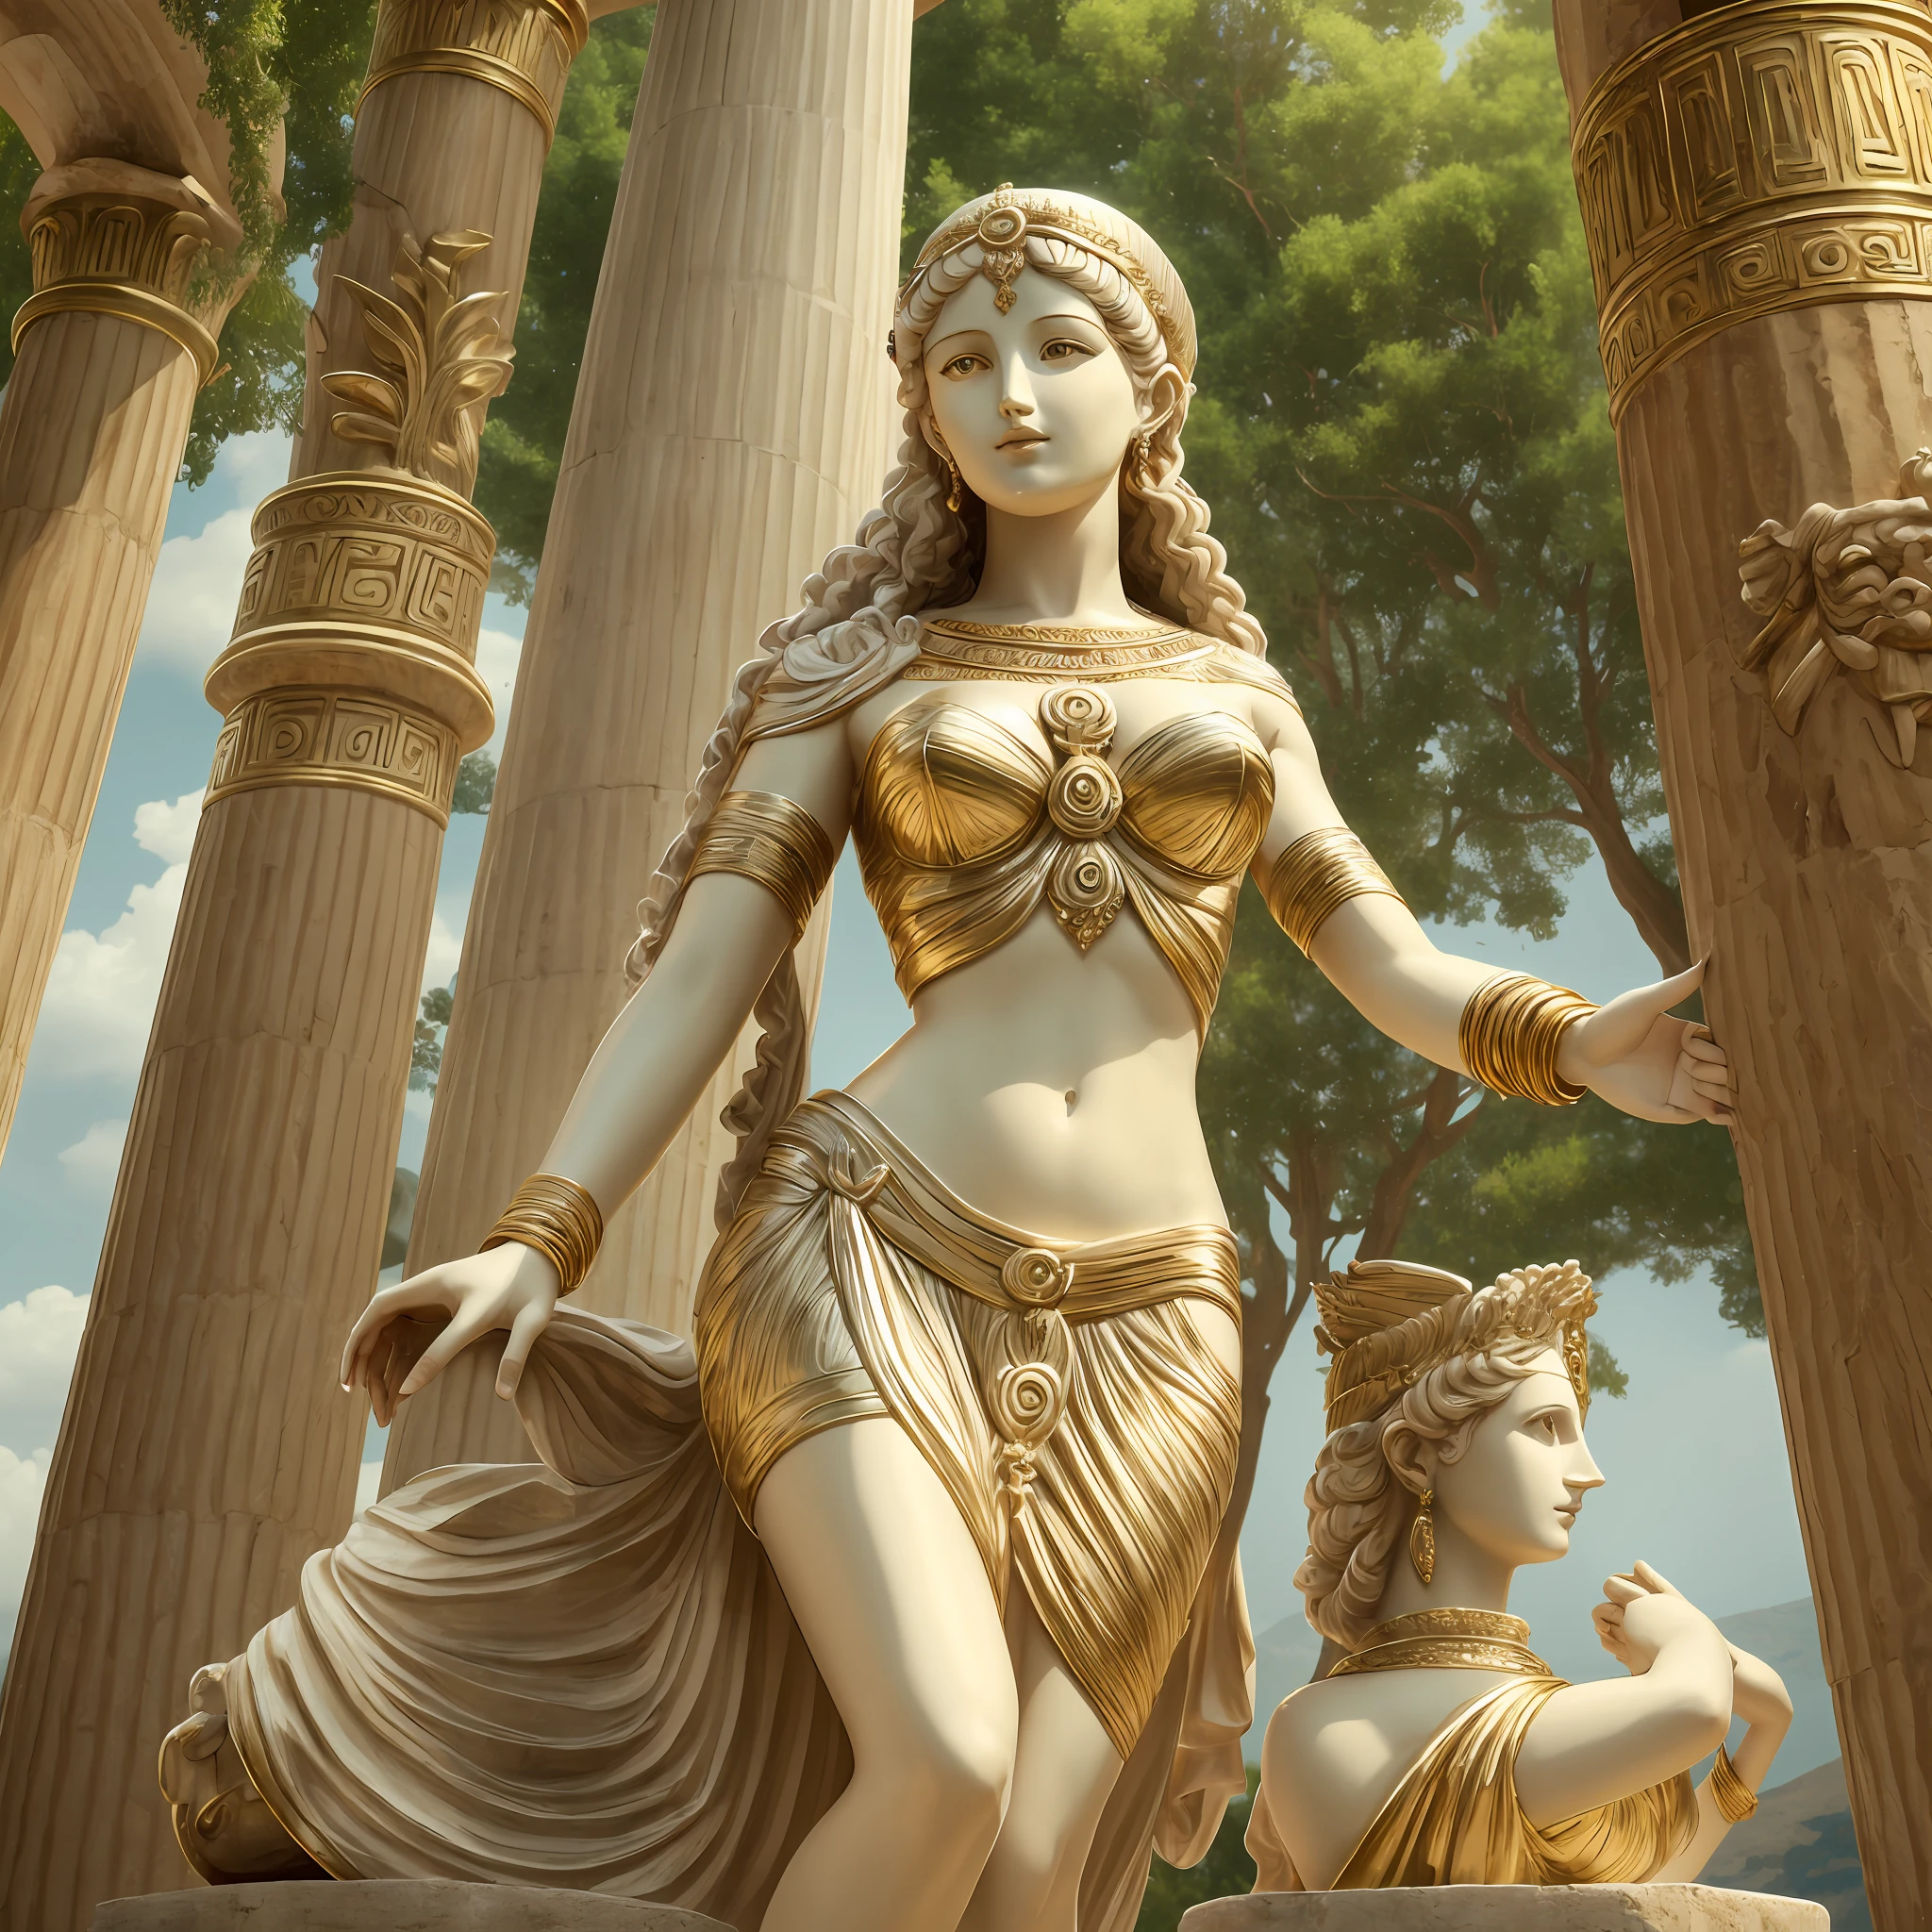 أفروديت, white dress like إلهة اليونانية, تمثال أنثى ألفد, ذراعين, ساقين, خلفية الكون الغامض, إلهة الحب, إلهة اليونانية of love and peace, إلهة فينوس, إلهة النور, إلهة هيستيا, إلهة جميلة, إلهة اليونانية, إلهة الحكمة, إلهة اليونانية Athena, آلهة مقدسة, شخص واحد فقط